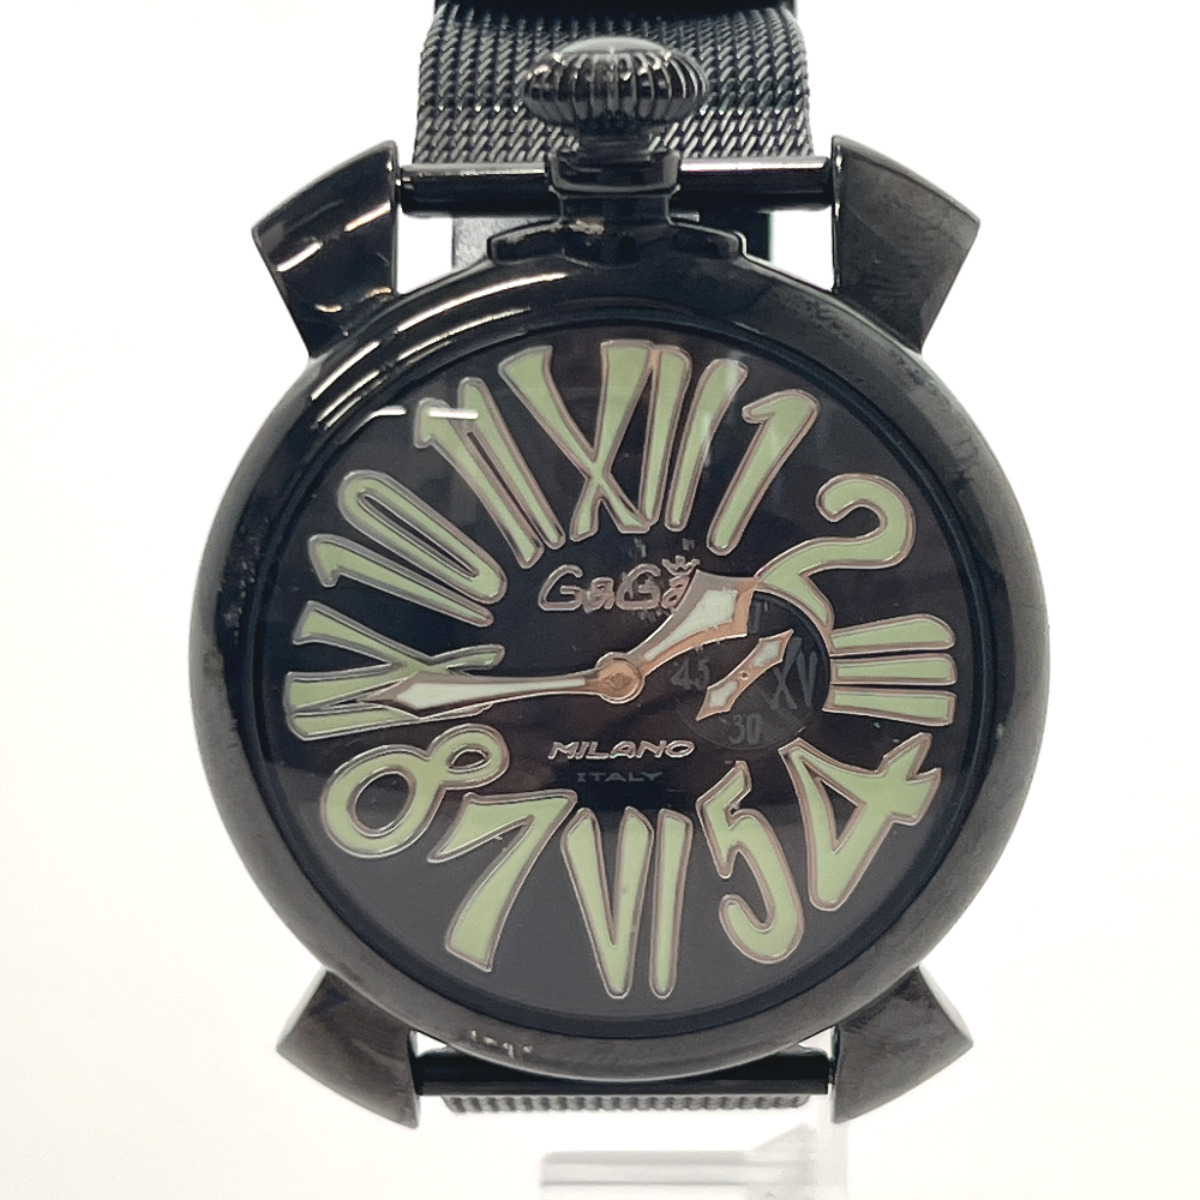 ガガ・ミラノ Gaga Milano 腕時計 5080 マヌアーレスリム ステンレススチール ブラック クオーツ ウォッチ 